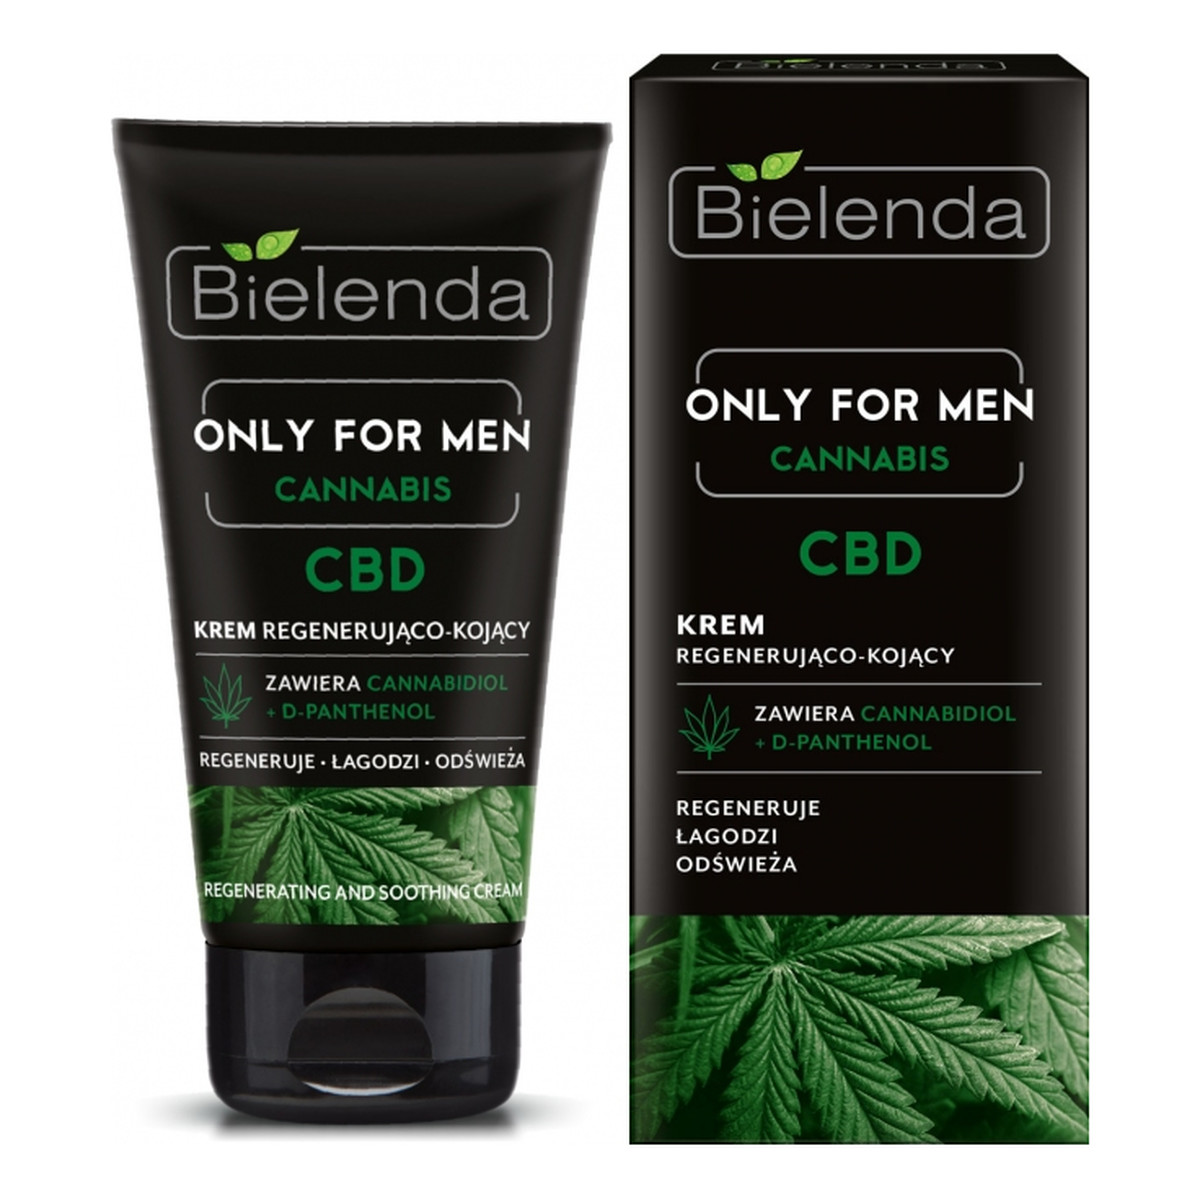 Bielenda Only for Men Cannabis krem regenerujaco-kojacy dla skóry wymagającej regeneracji 50ml